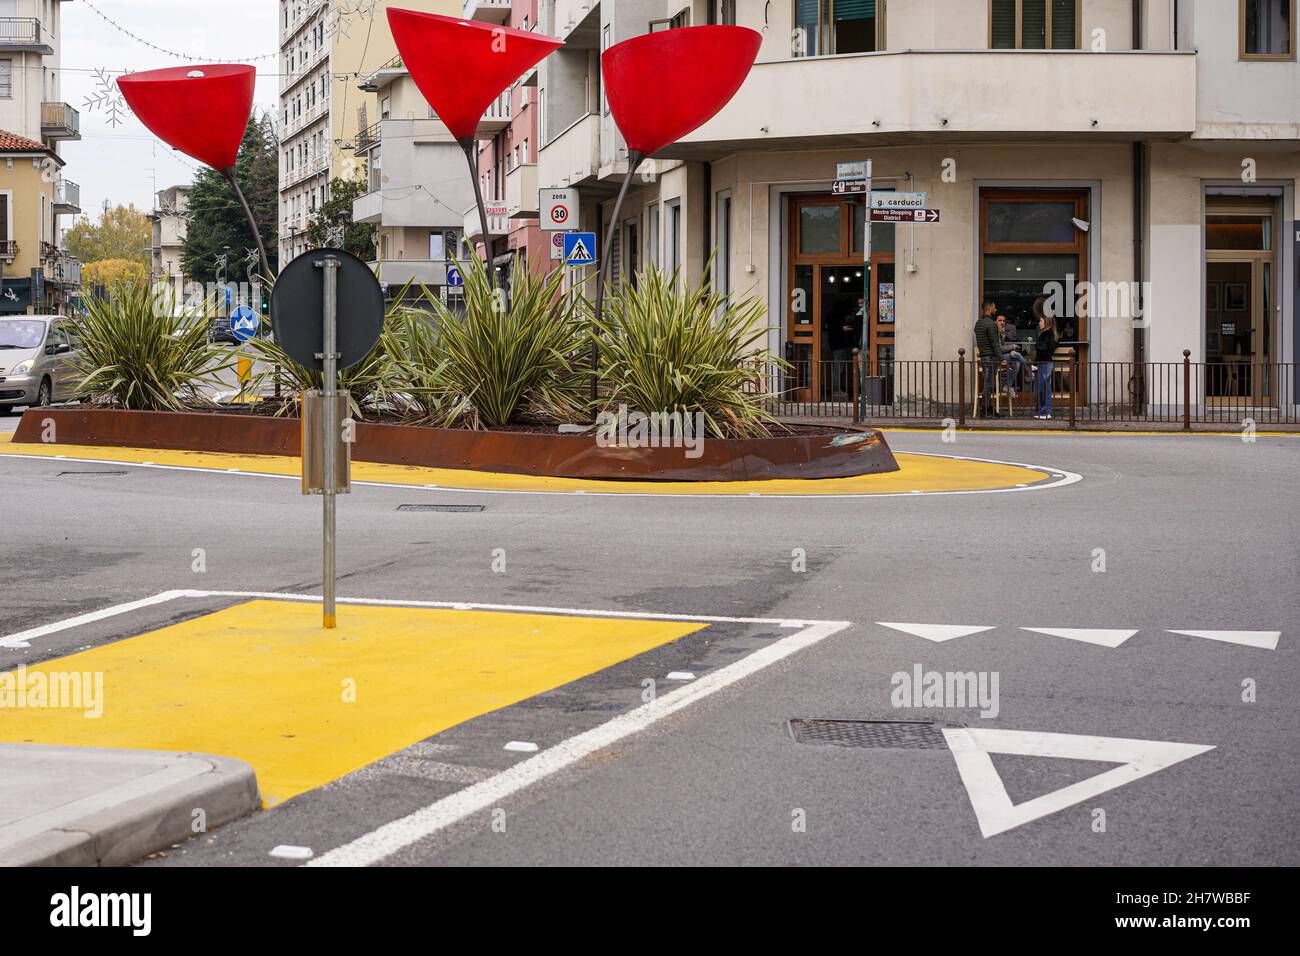 Straßenszene in Venedig Mestre. Gebogene Lampen mit großen roten Farbtönen stehen auf einer Verkehrsinsel. Rund um die Insel ist eine gelbe Abgrenzung. Stockfoto